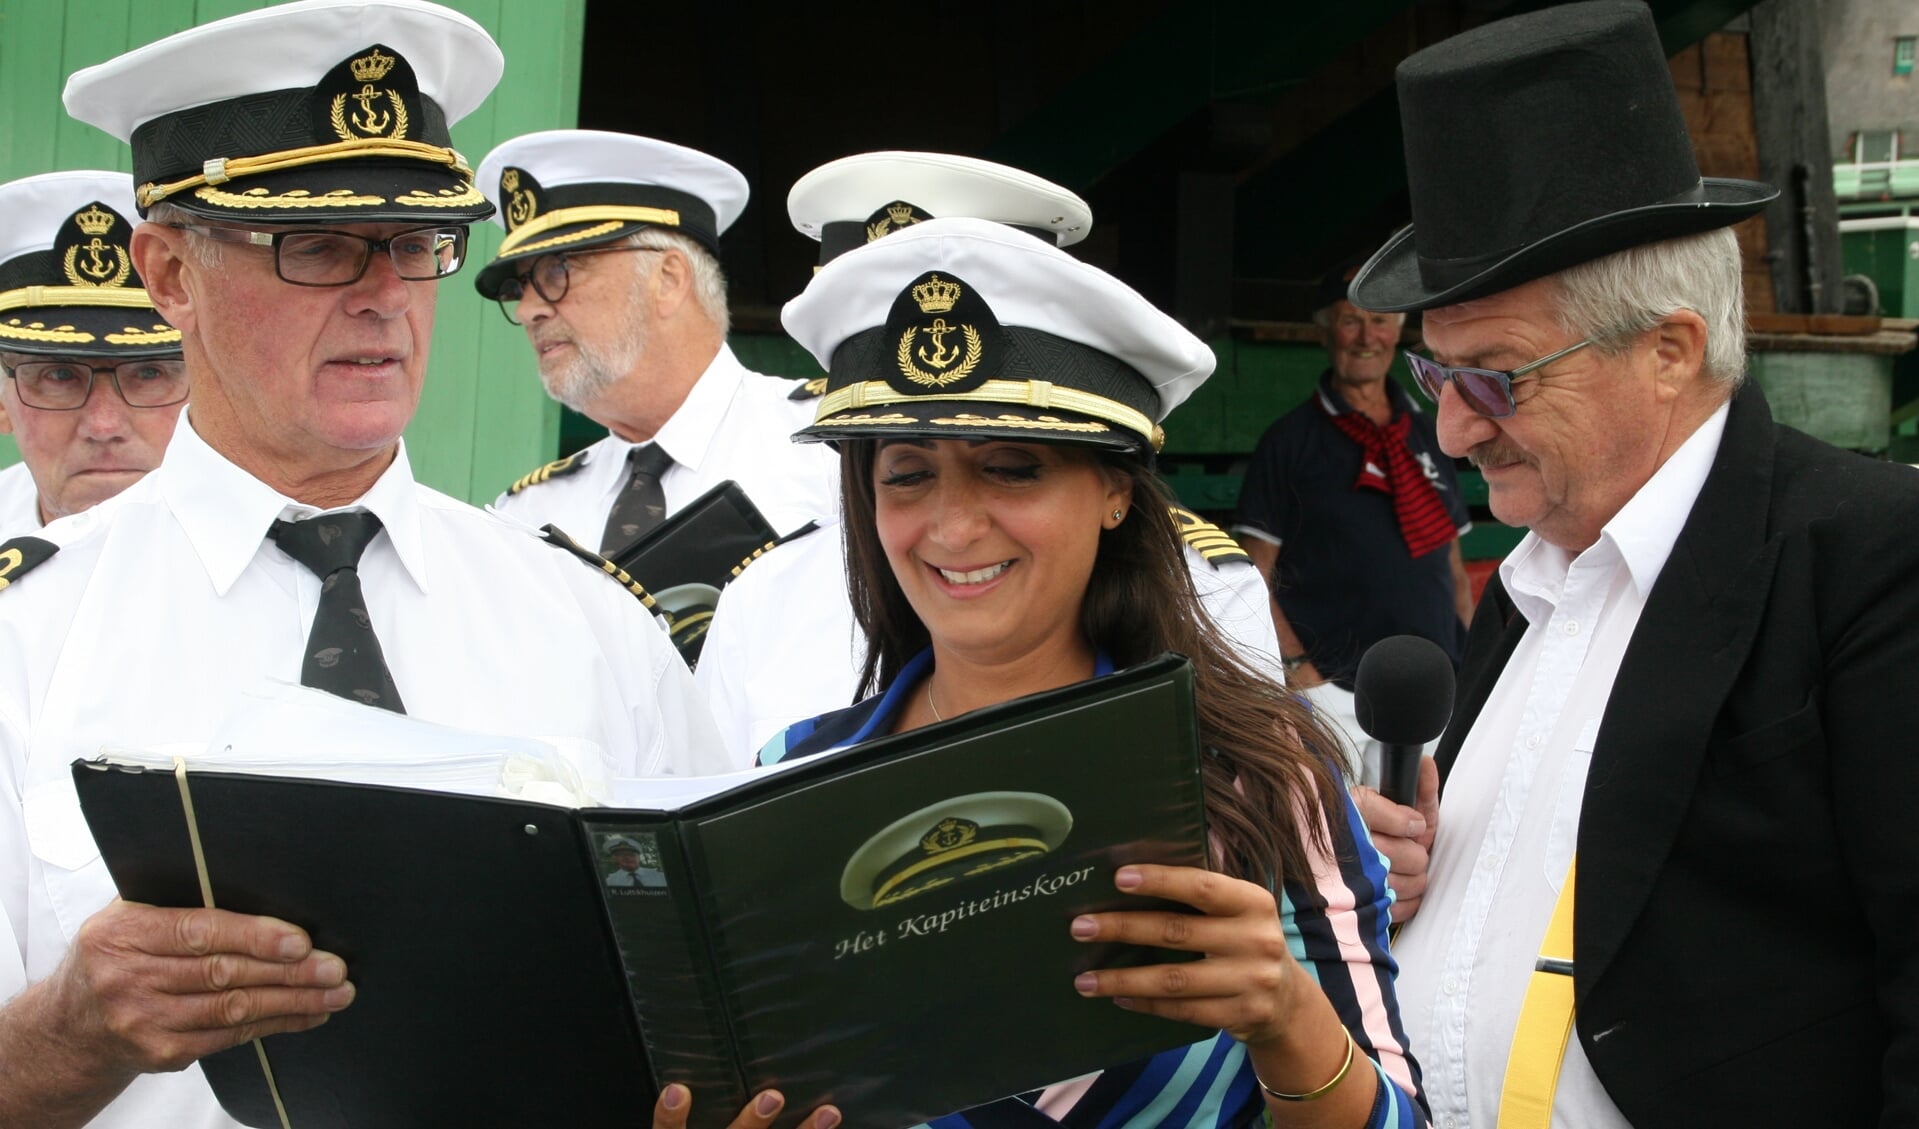 Het Kapiteinskoor had ook bijzondere meezingende gasten zoals wethouder Songül Mutluer. 